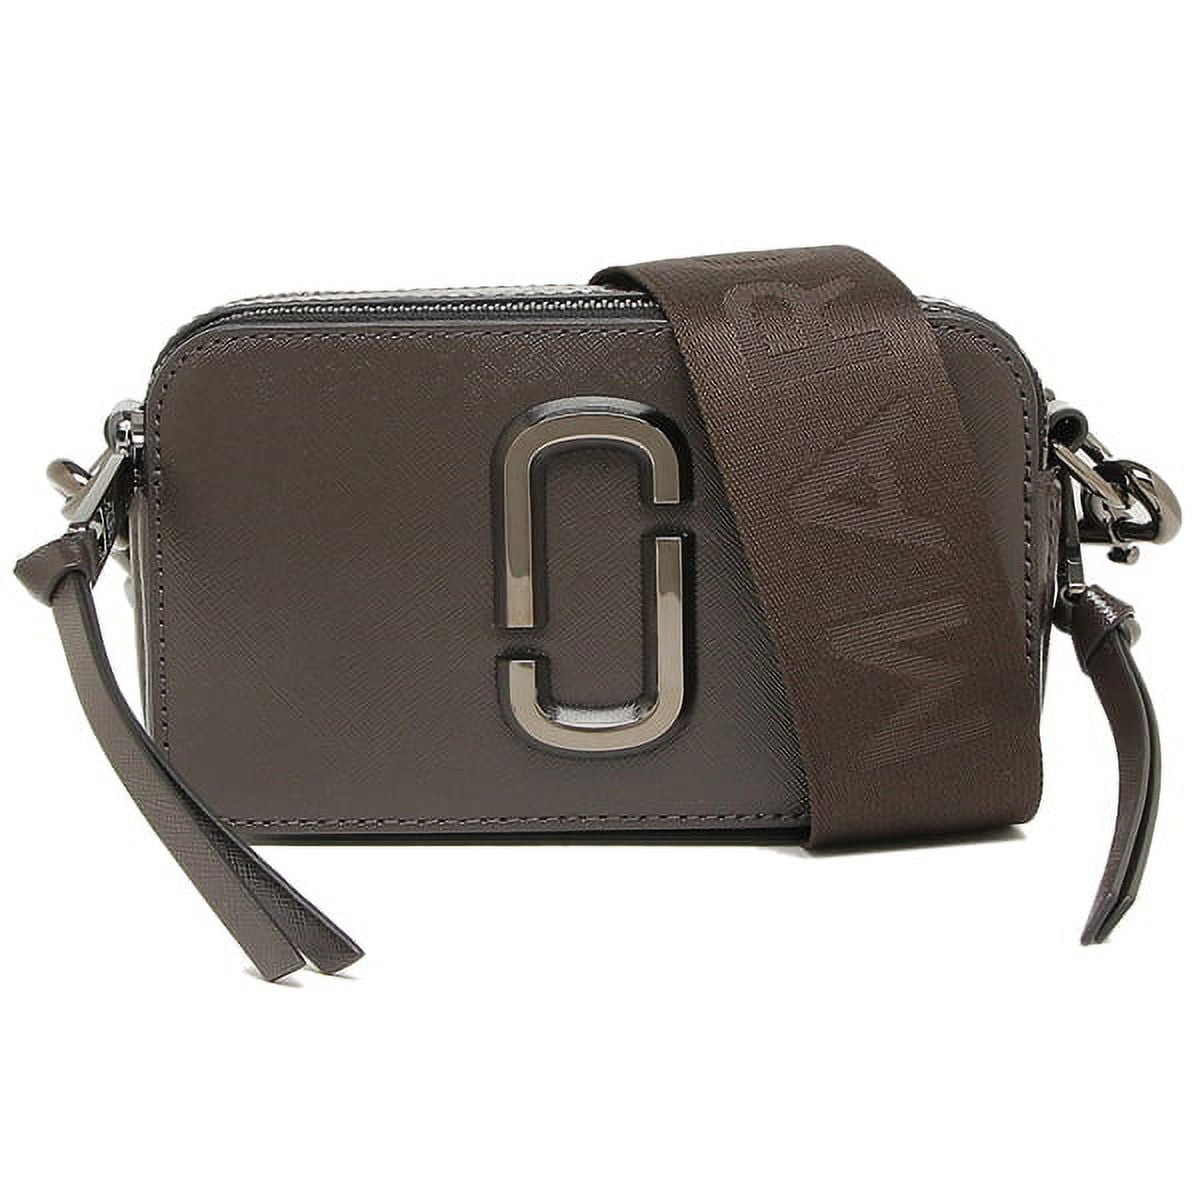 Marc Jacobs Logo Strap The Snapshot Camera Bag Leather Shoulder Bag BNWT